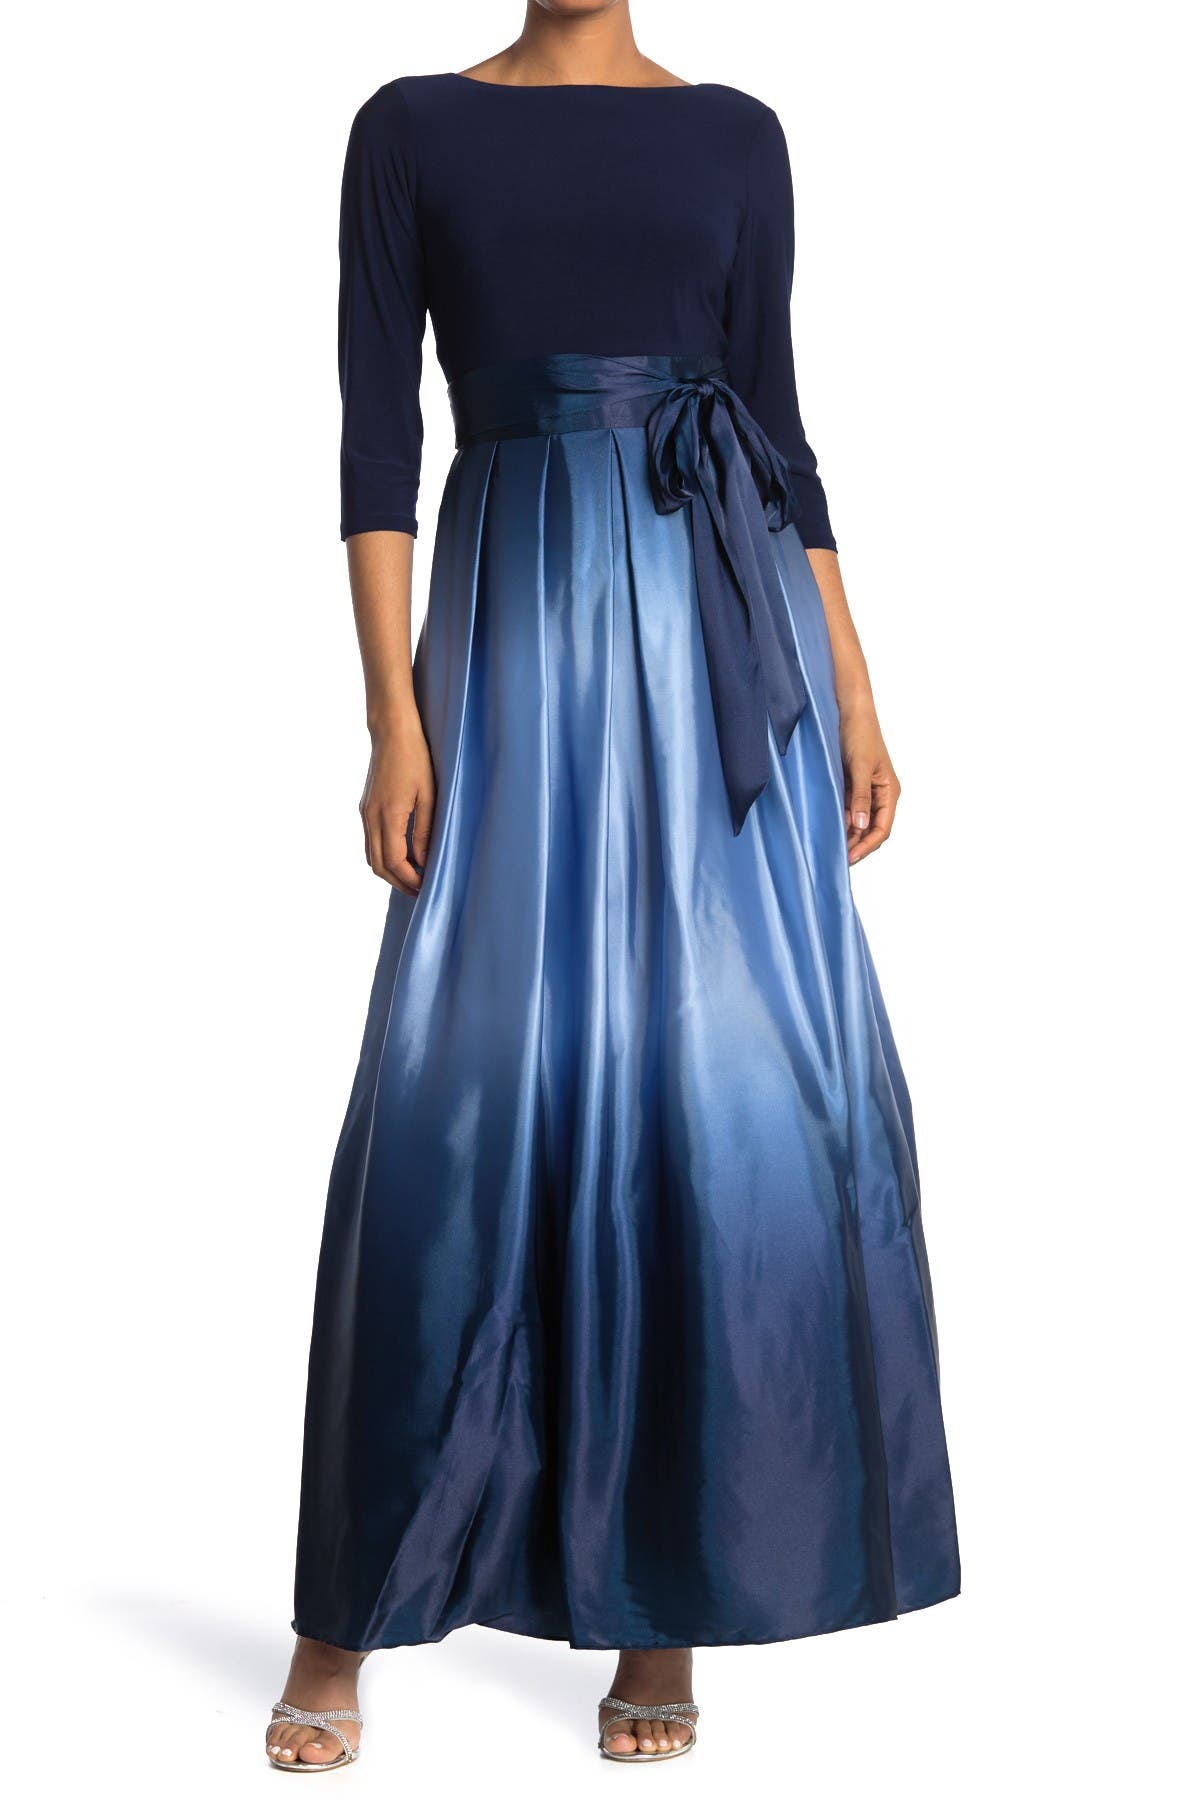 SLNY Dresses for Women | Nordstrom Rack